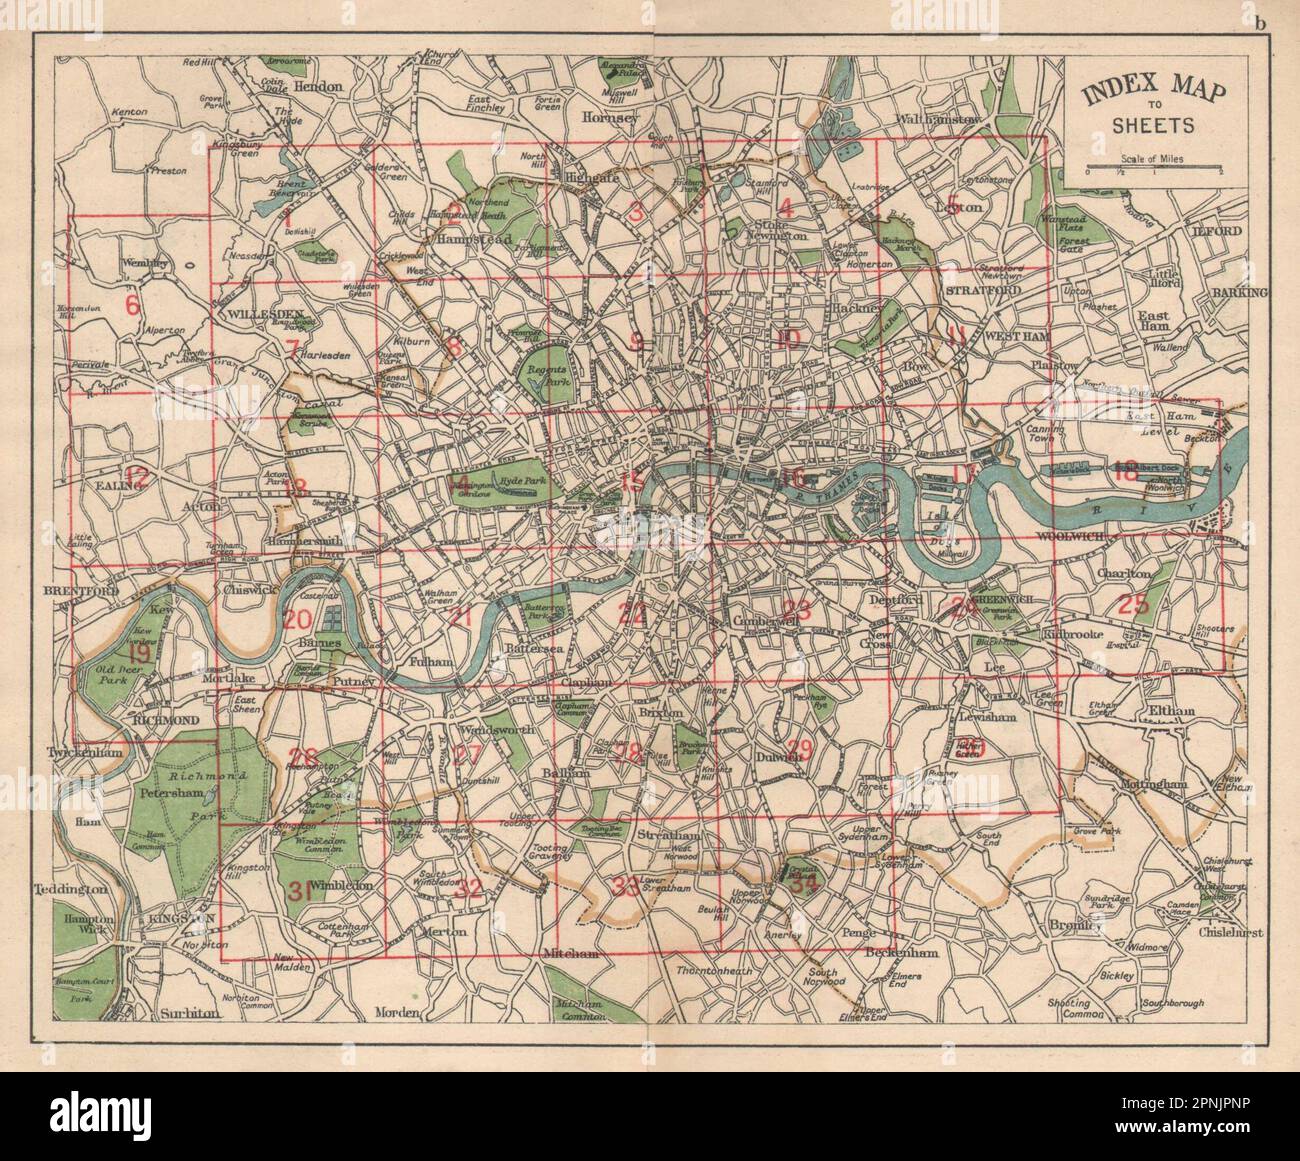 LONDRES. Mapa de índice. Carreteras. BACON 1925 antiguo gráfico de plan vintage Foto de stock